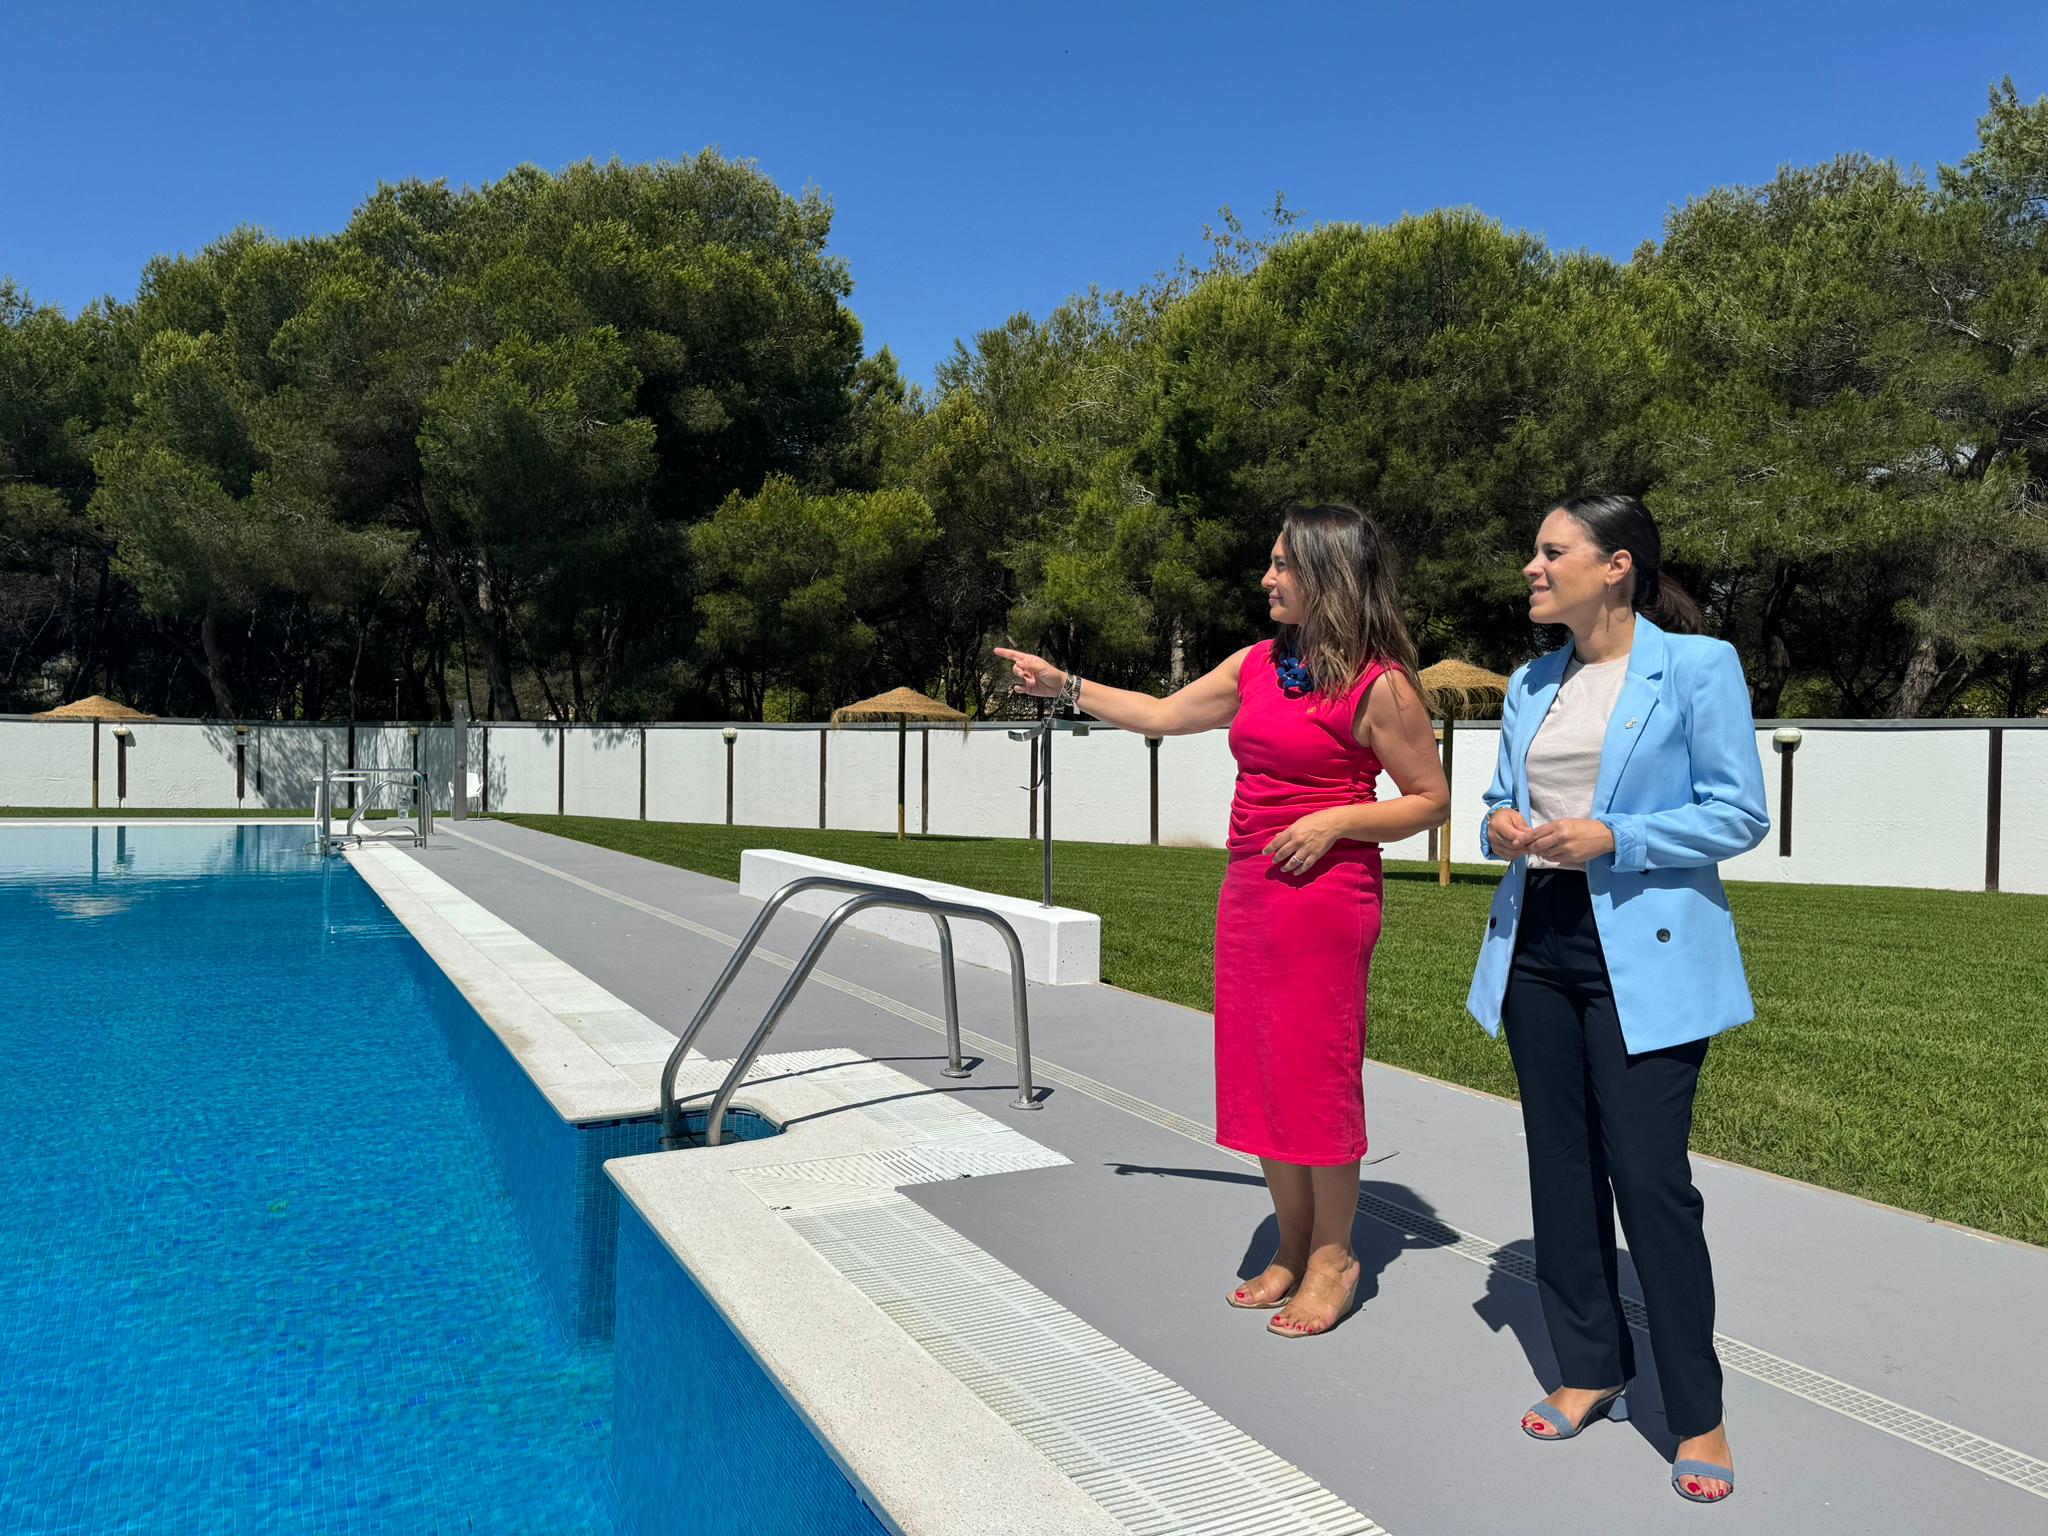 La piscina del Parc del Pinar entra en servei dissabte que ve 22 de juny amb diverses millores per als usuaris